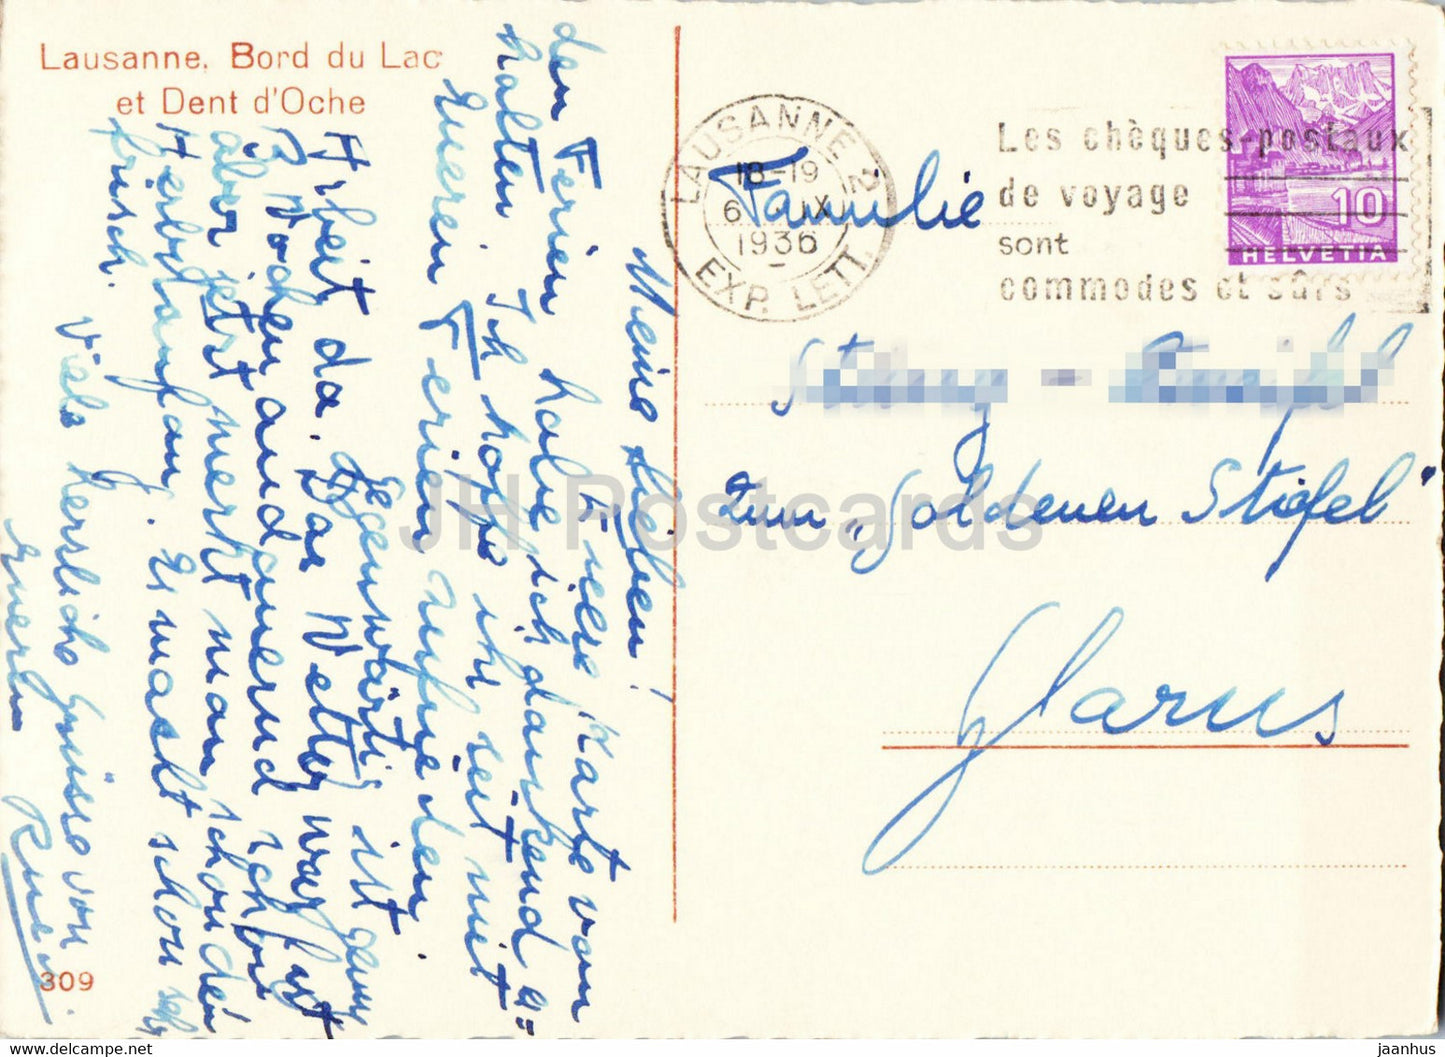 Lausanne - Bord du Lac et Dent d'Oche - 309 - alte Postkarte - 1936 - Schweiz - gebraucht